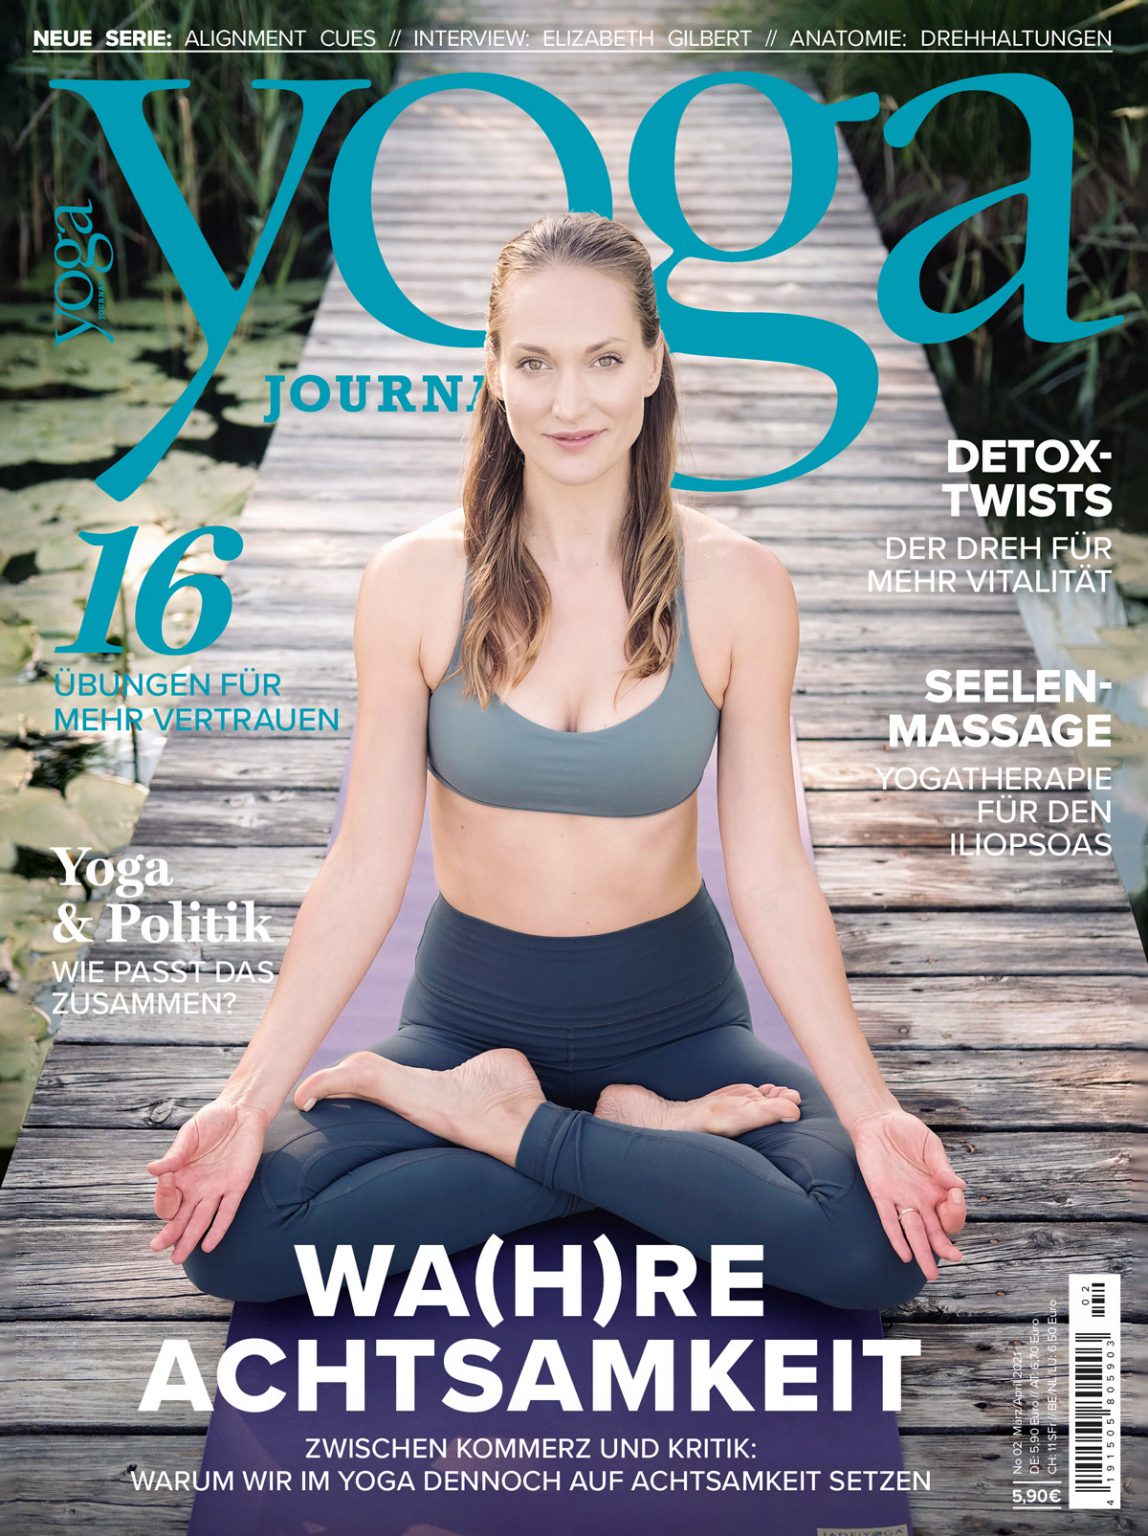 Auch im Yoga Journal erschienen